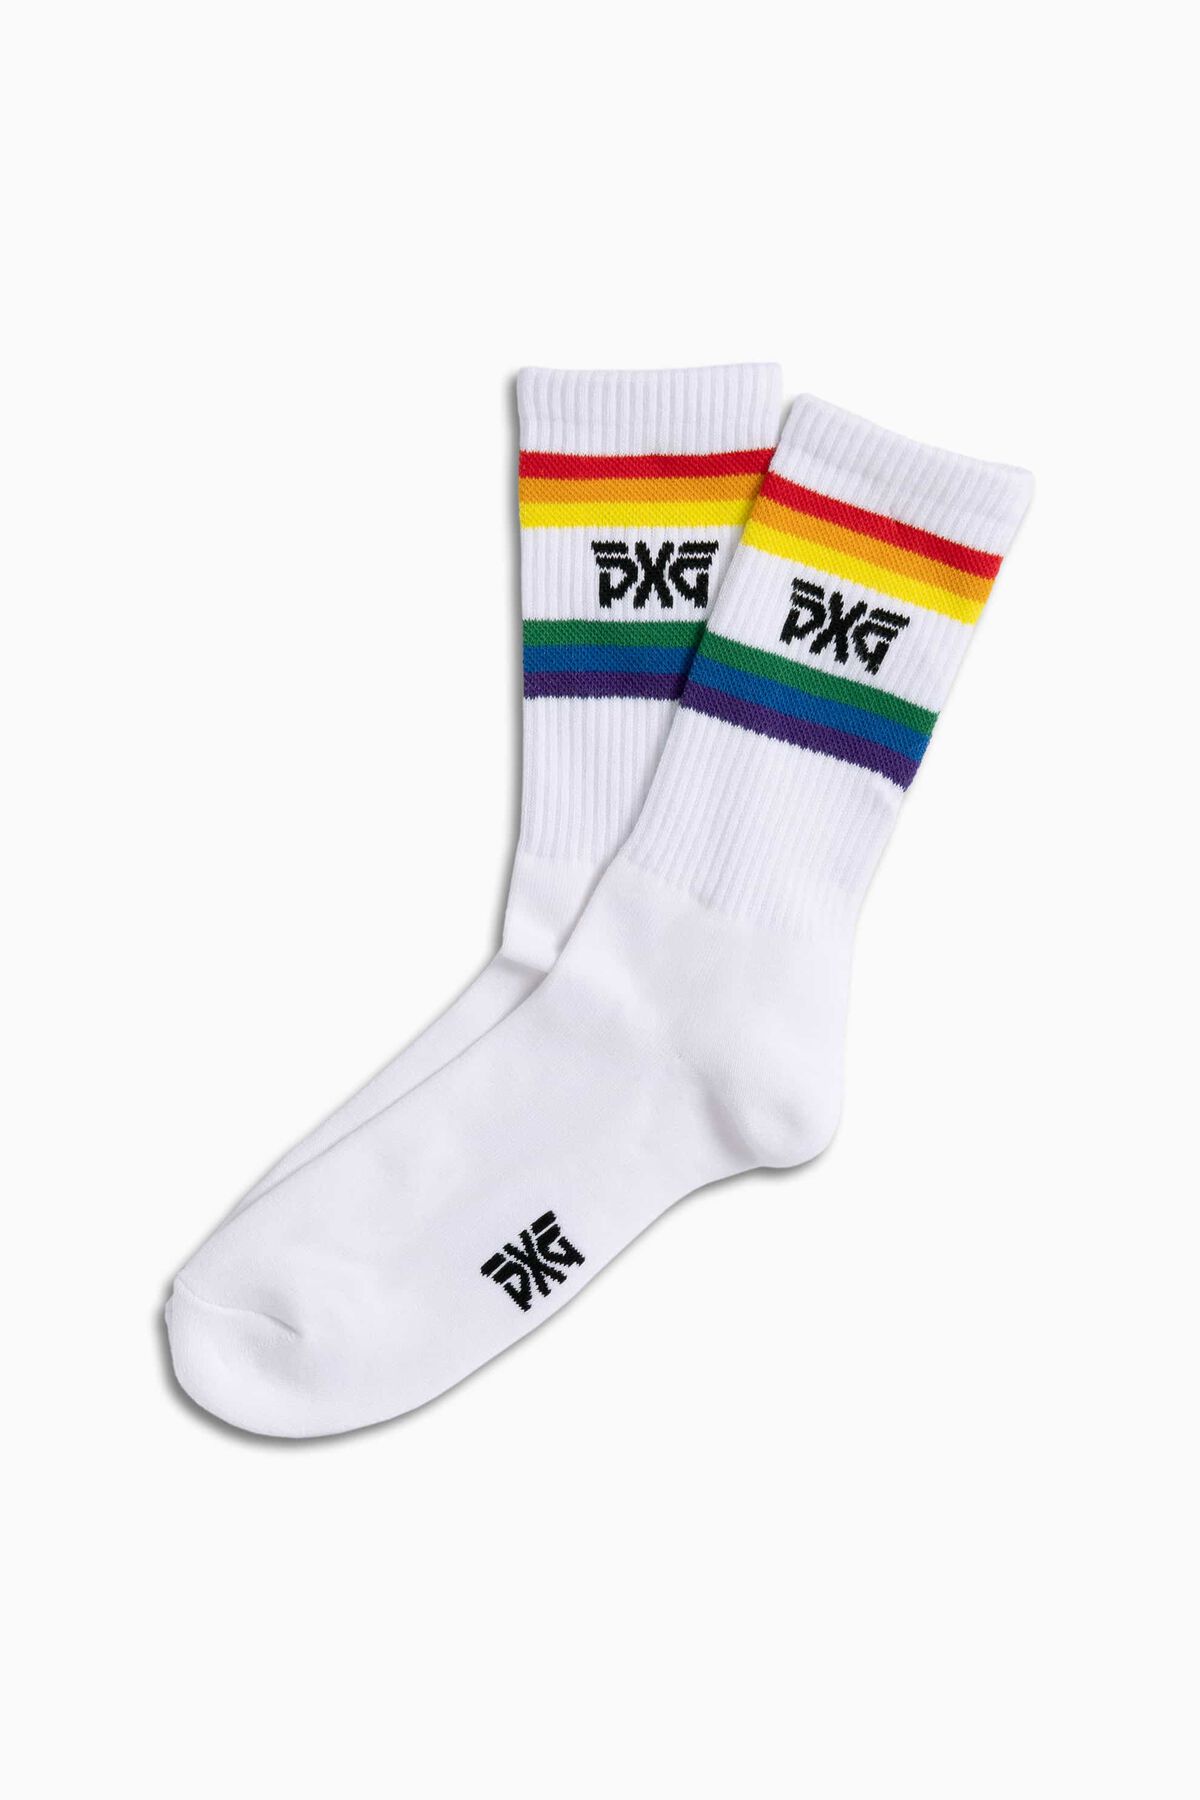 Buy Men's Pride Crew Socks | PXG